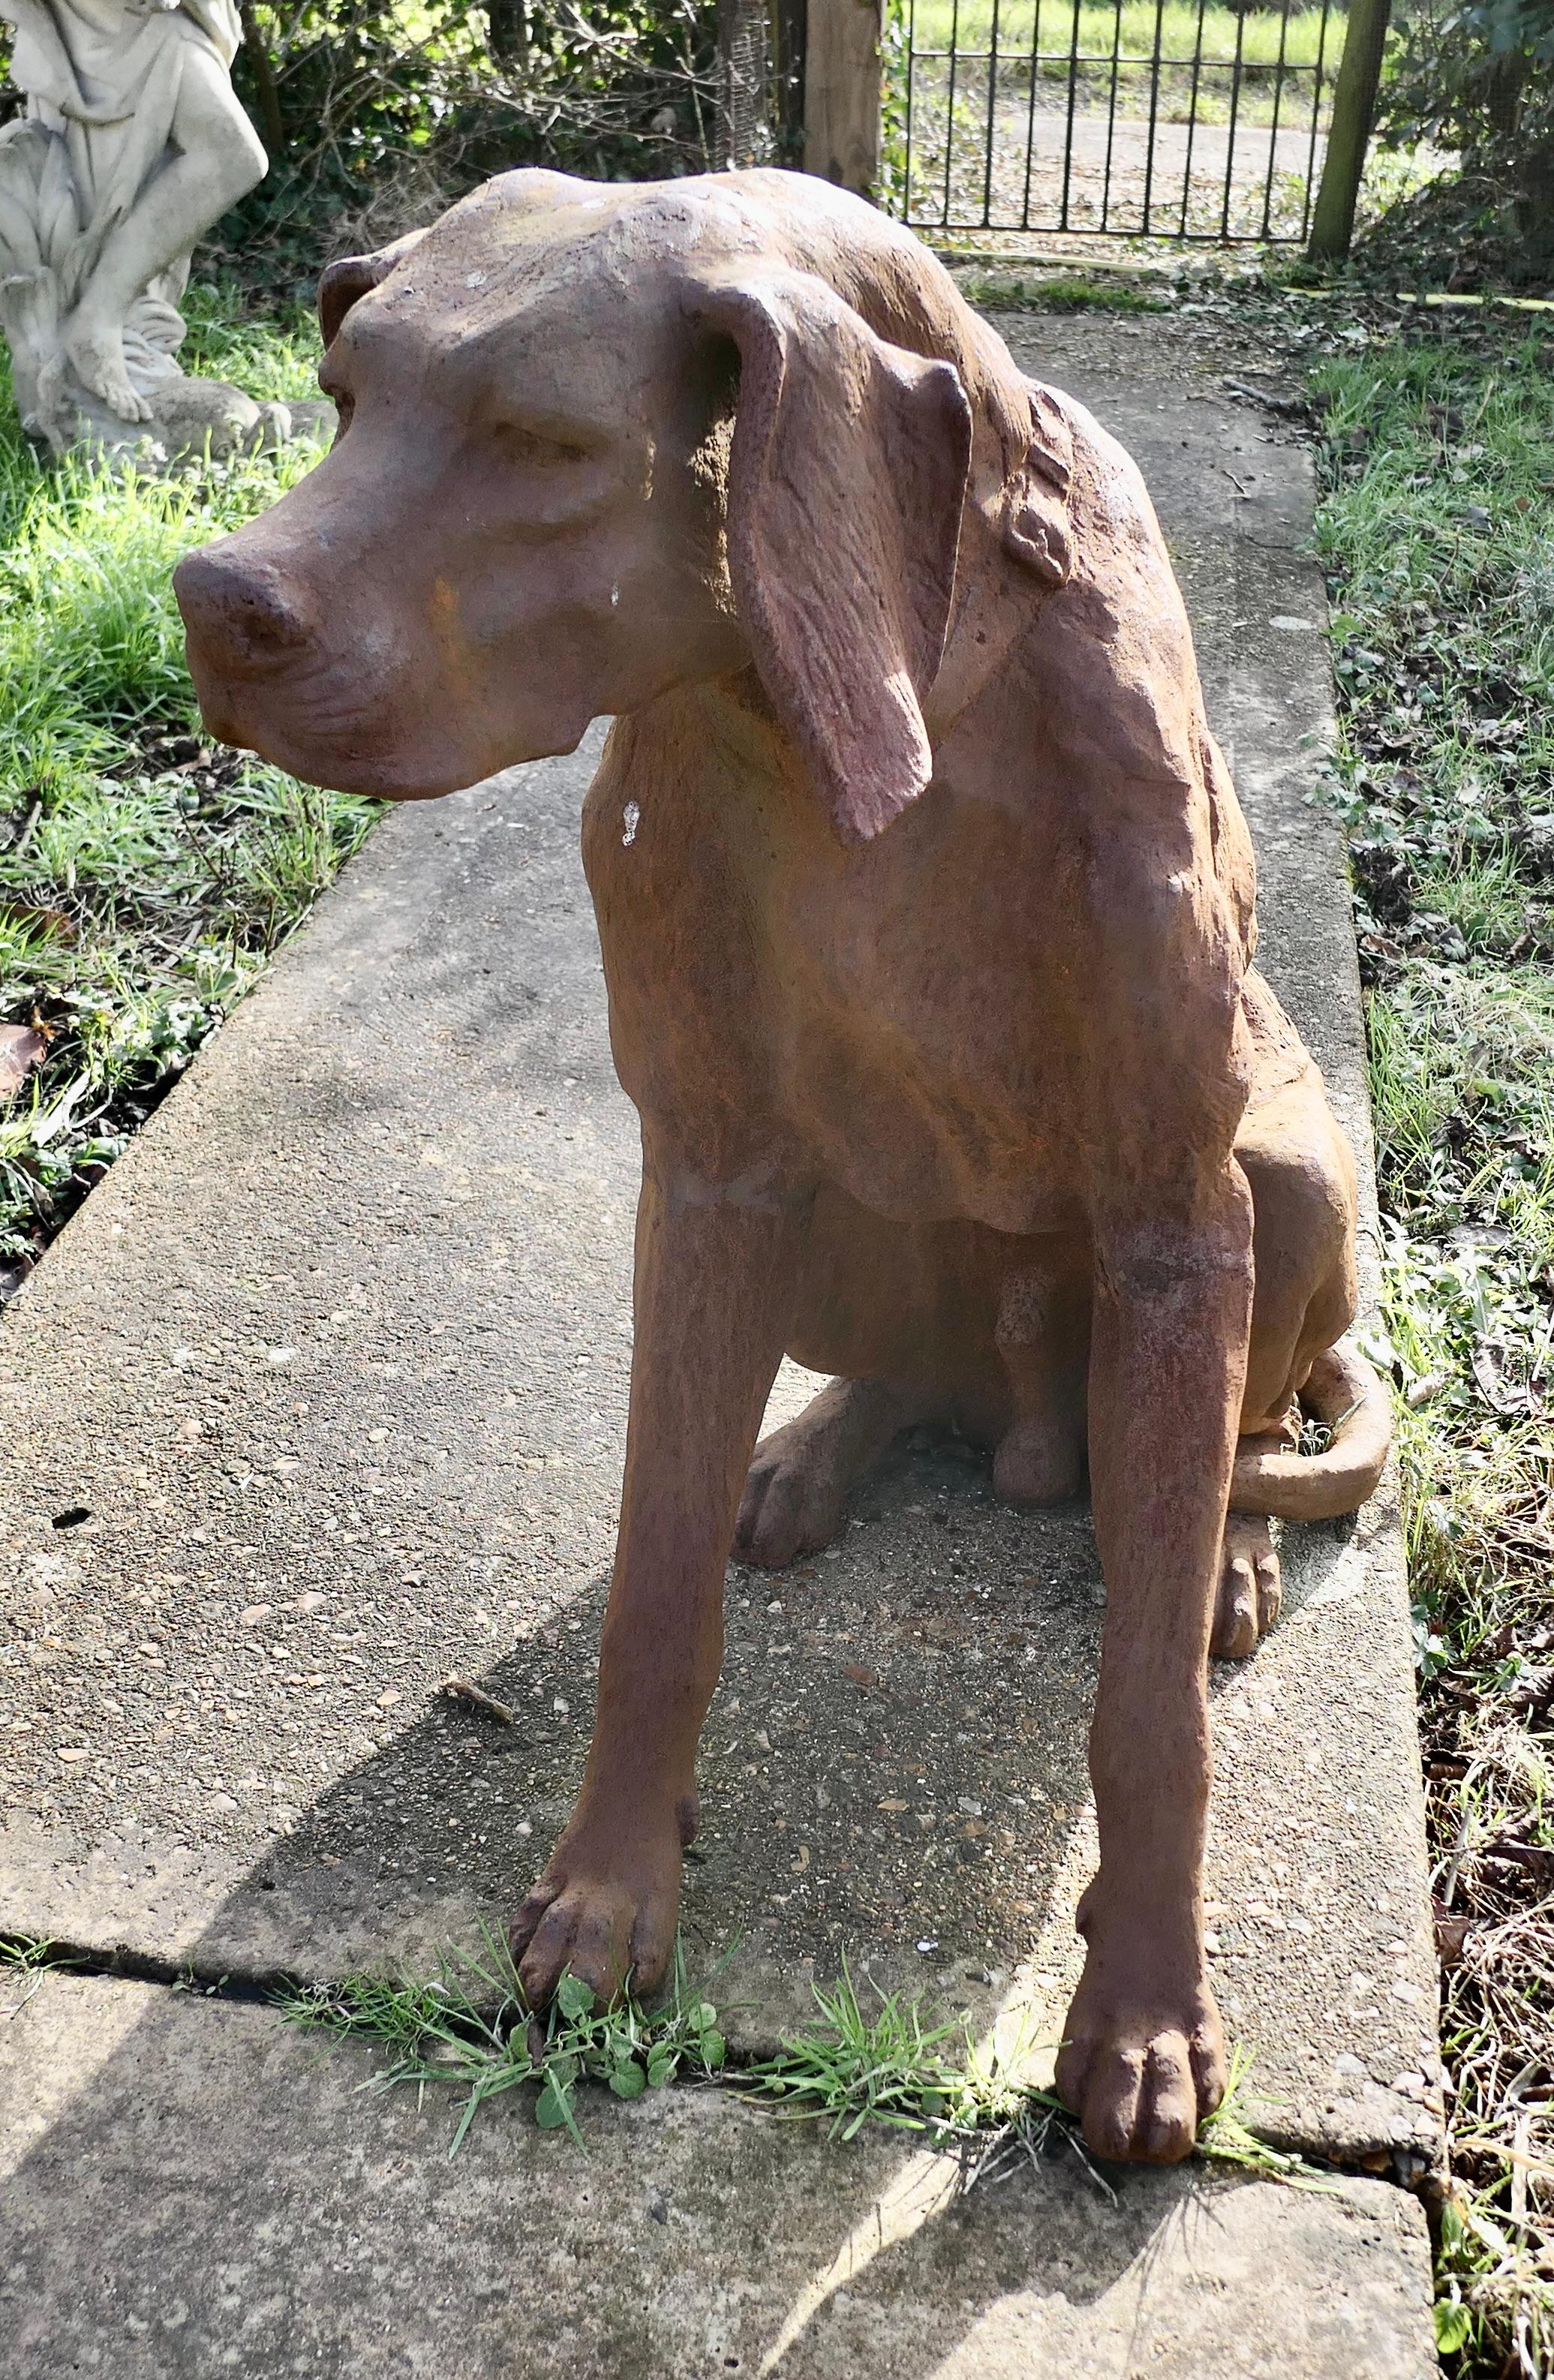 Statue de chien de chasse en fonte, grandeur nature, vieillie par les intempéries

Un très beau Chap, il est assis et il est complètement tridimensionnel et il est beau de tous les côtés.
Notre fidèle chien est assis et attend l'attention de son